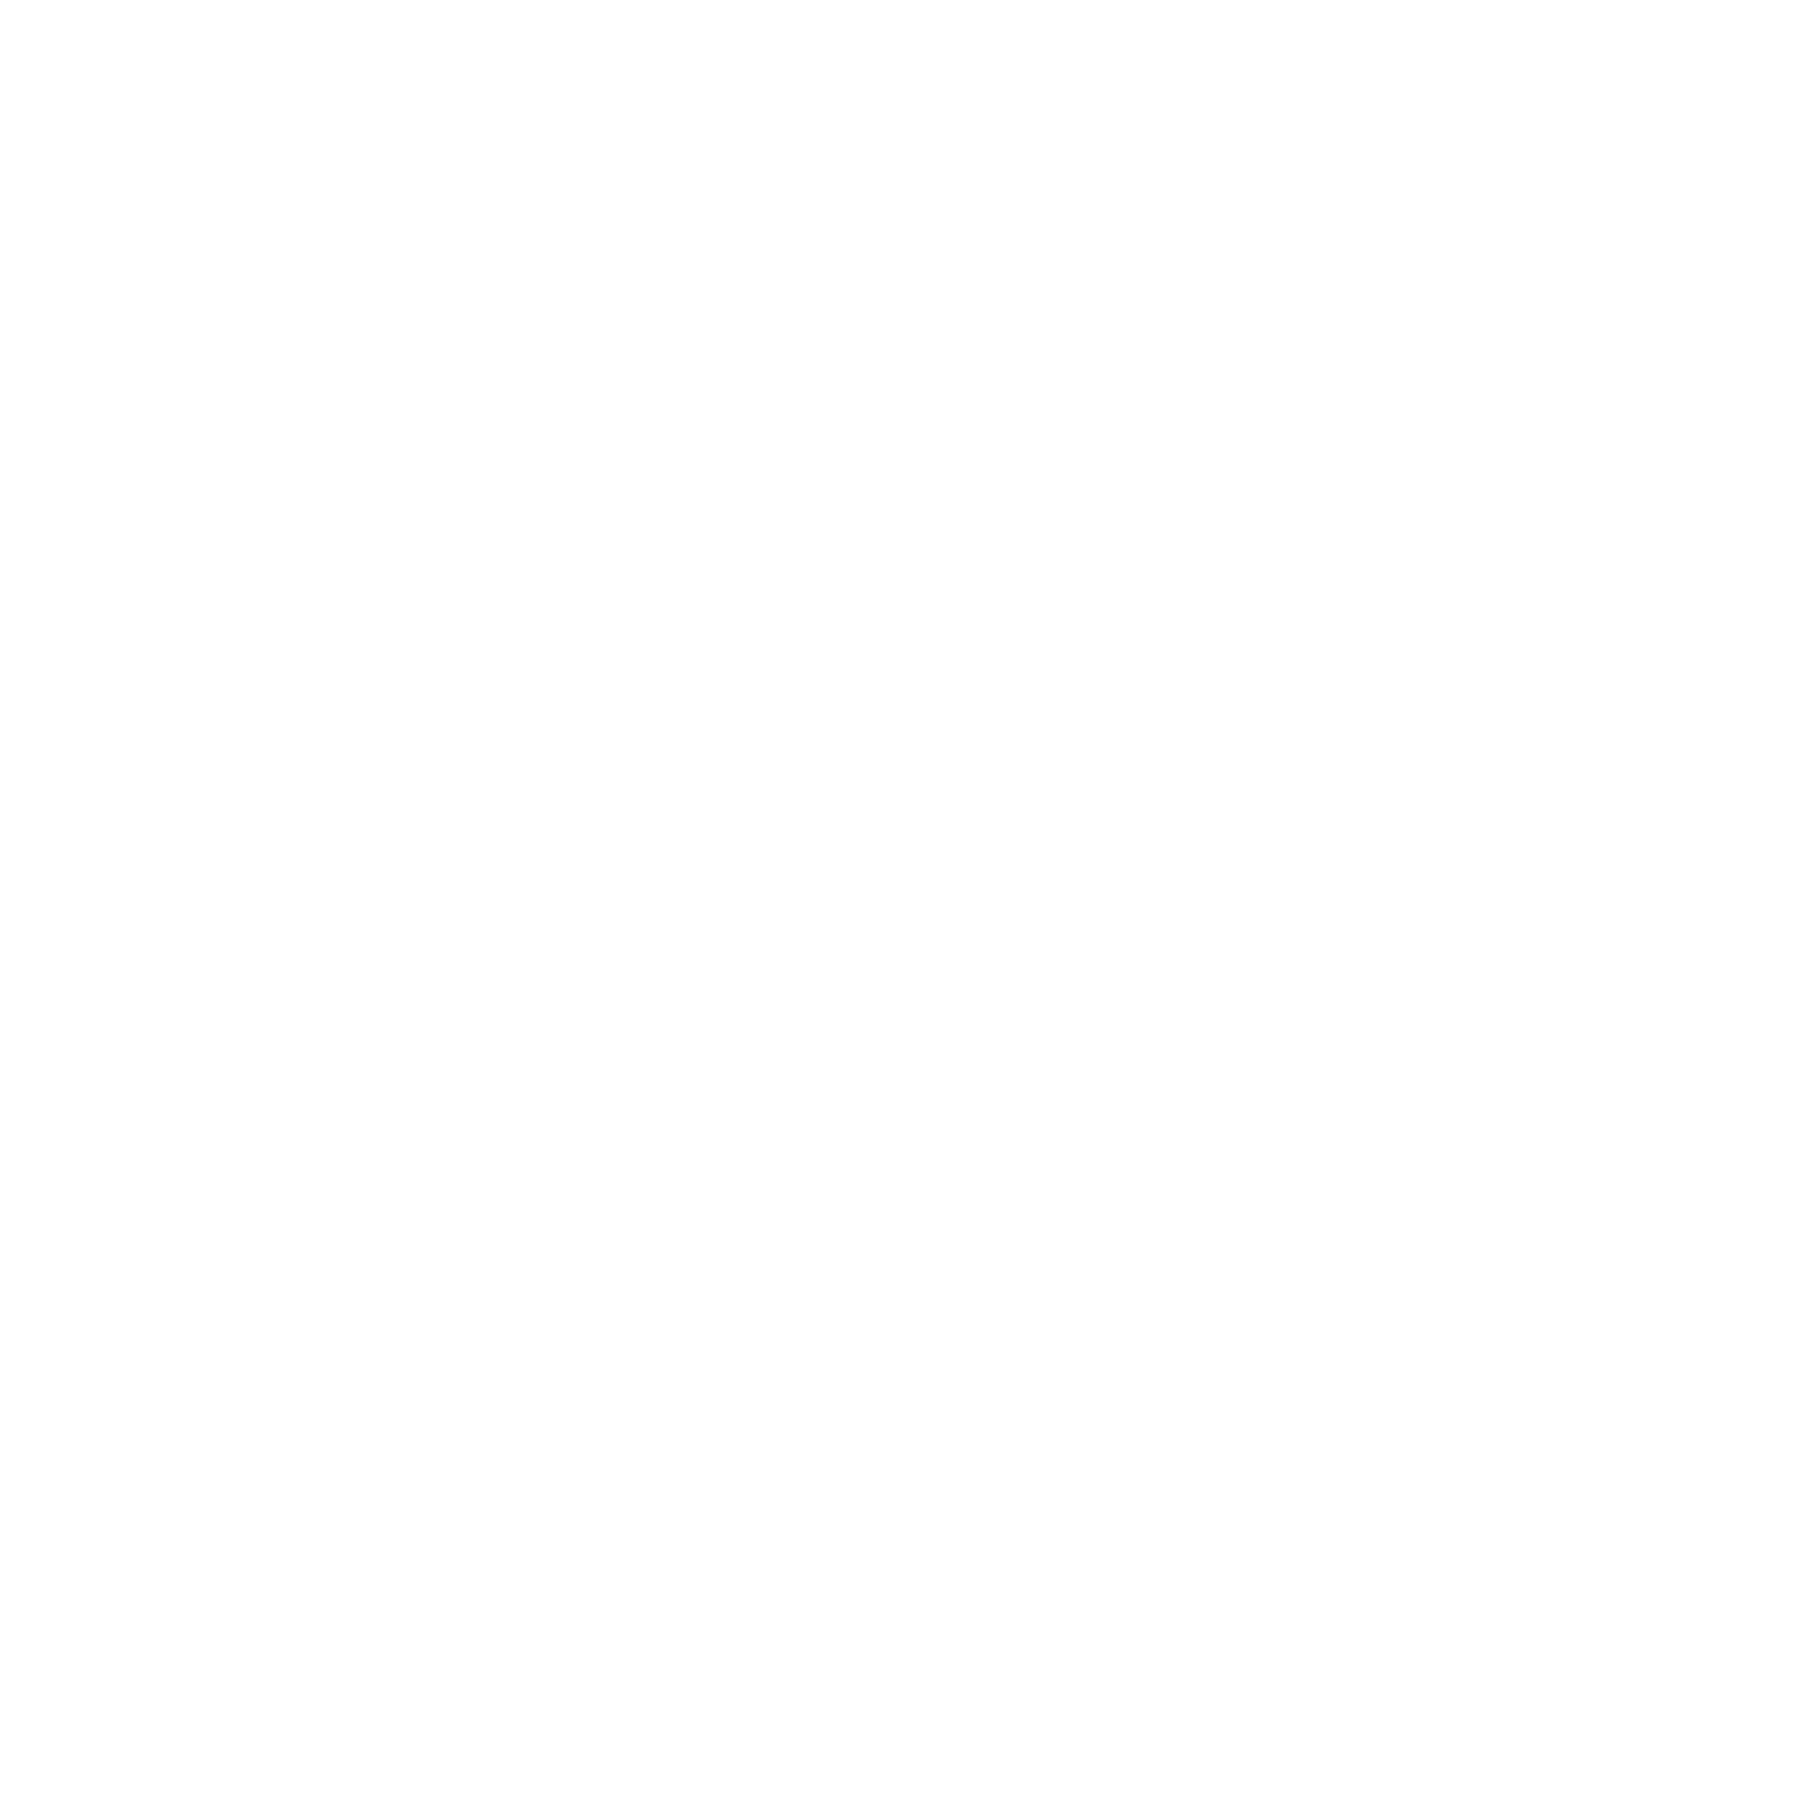 Brewing with BIM